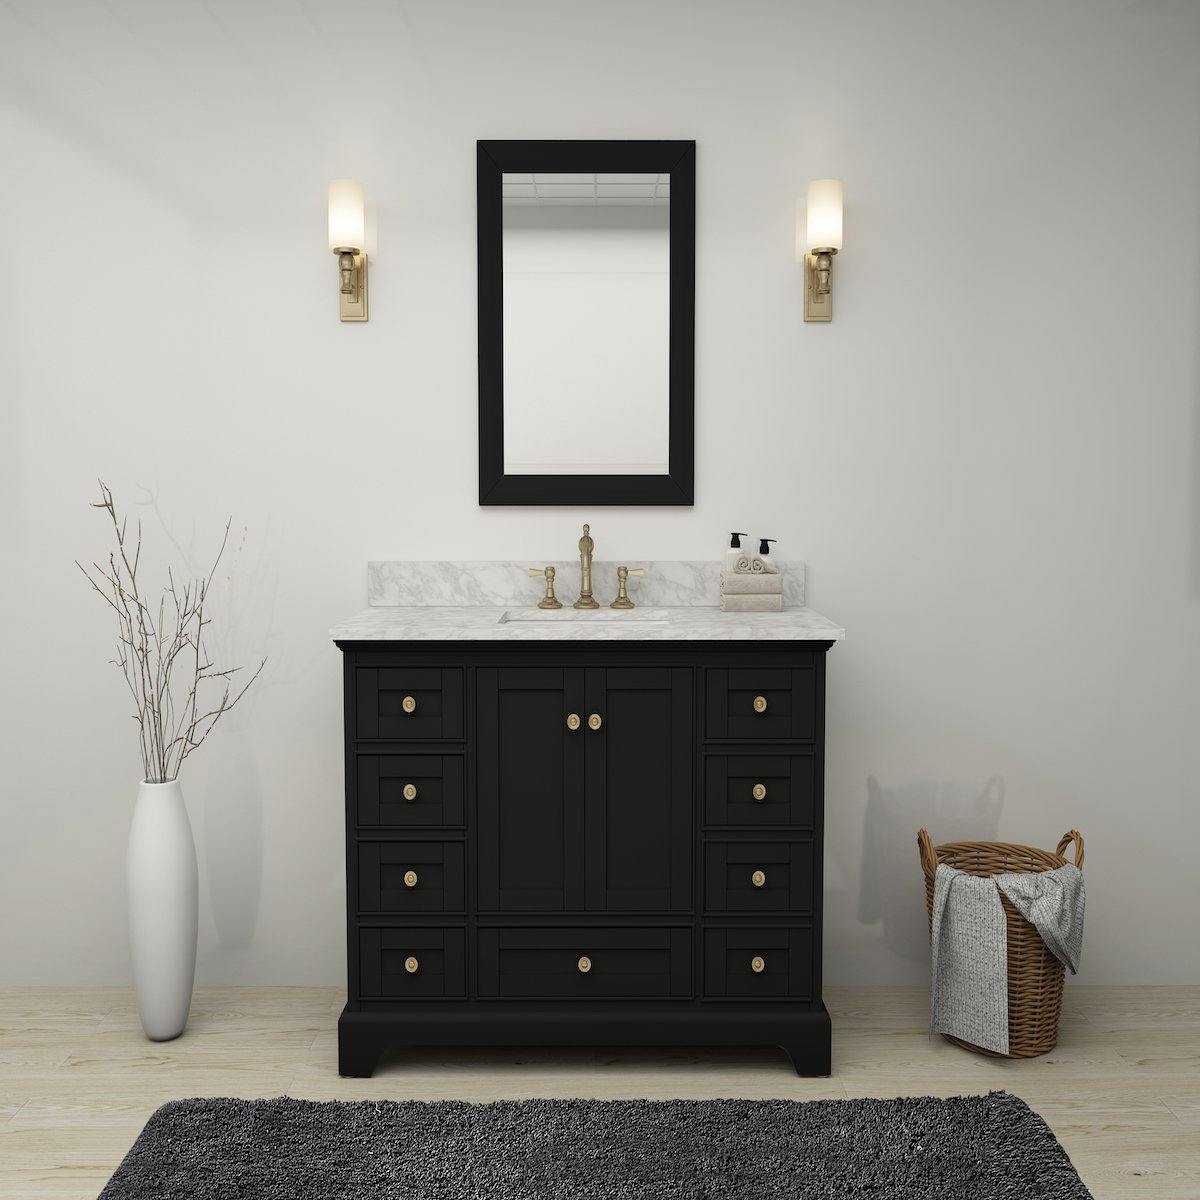 Ancerre Designs Audrey 48 Inch Onyx Black Single Vanity in Bathroom